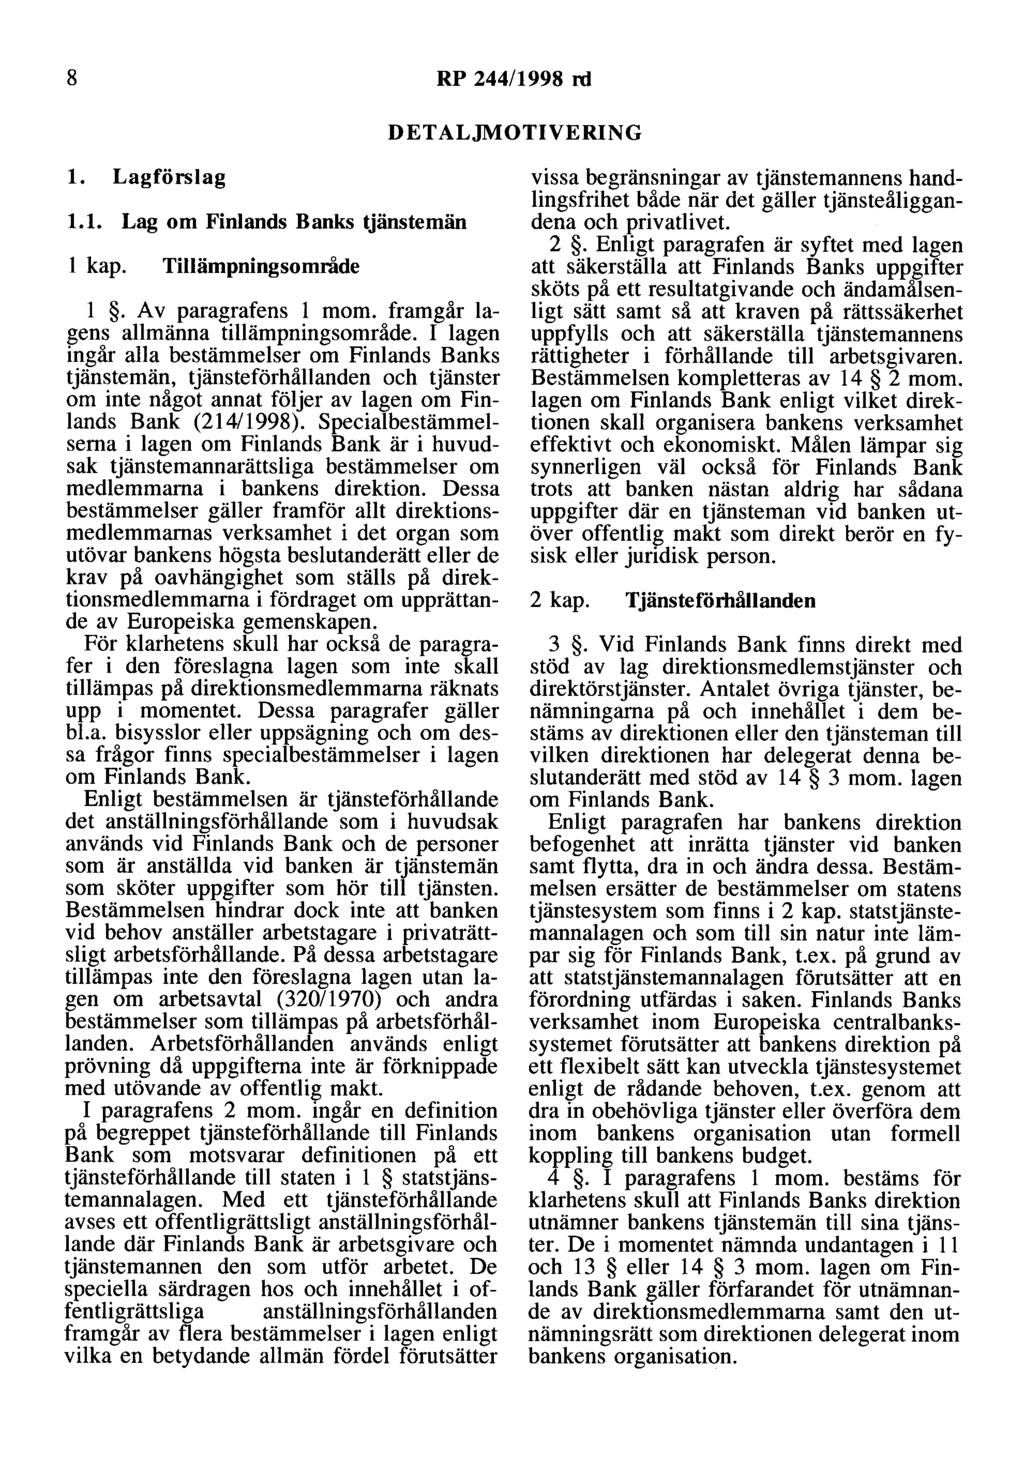 8 RP 244/1998 rd DETALJMOTIVERING l. Lagförslag 1.1. Lag om Finlands Banks tjänstemän l kap. Tillämpningsområde l. Av paragrafens l mom. framgår lagens allmänna tillämpningsområde.